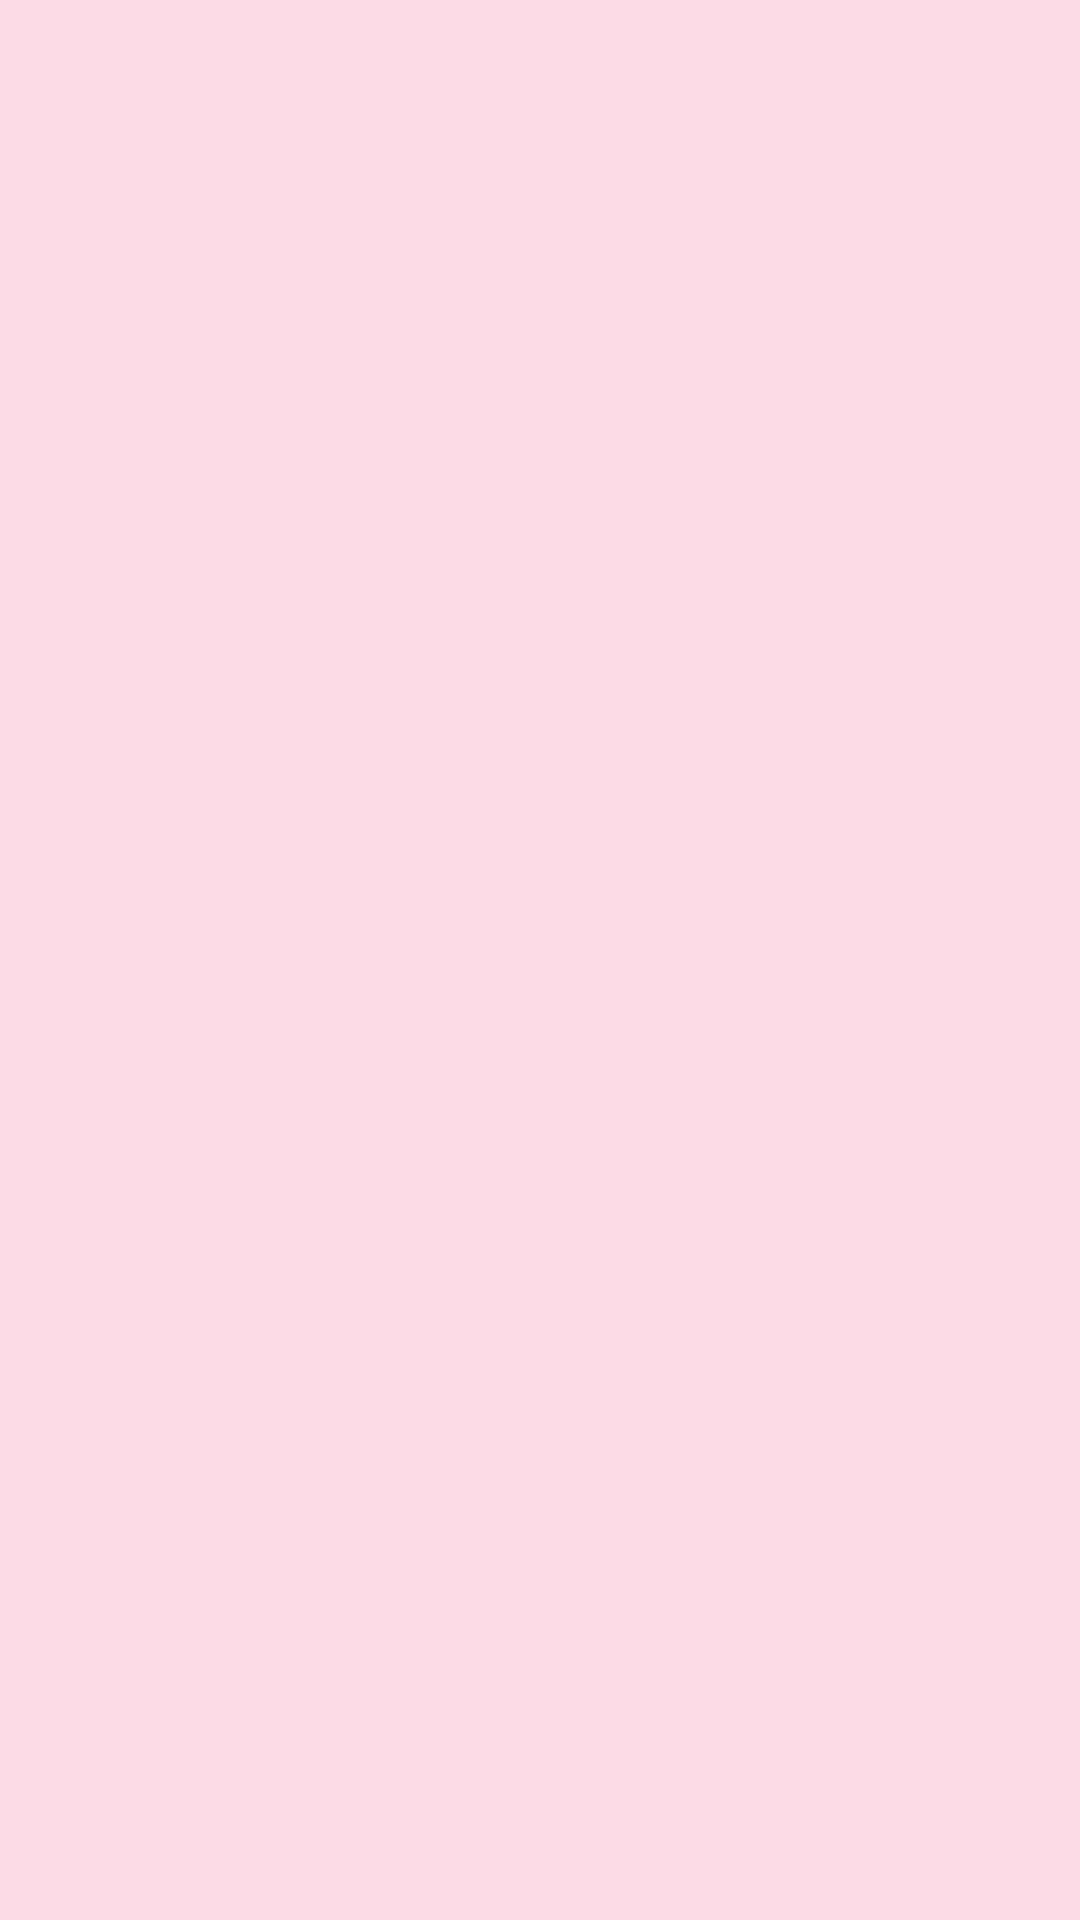 Pale pink wallpapers or hình nền màu hồng nhạt: Những hình nền màu hồng nhạt được thiết kế với phong cách tinh tế và giản đơn, giúp tạo nên một không gian màn hình mới thú vị. Sự kết hợp giữa màu nhạt và một chút gam màu tông trầm sẽ làm nổi bật chiếc điện thoại của bạn. Xem ngay để khám phá thế giới của những hình nền màu hồng nhạt tuyệt đẹp này!